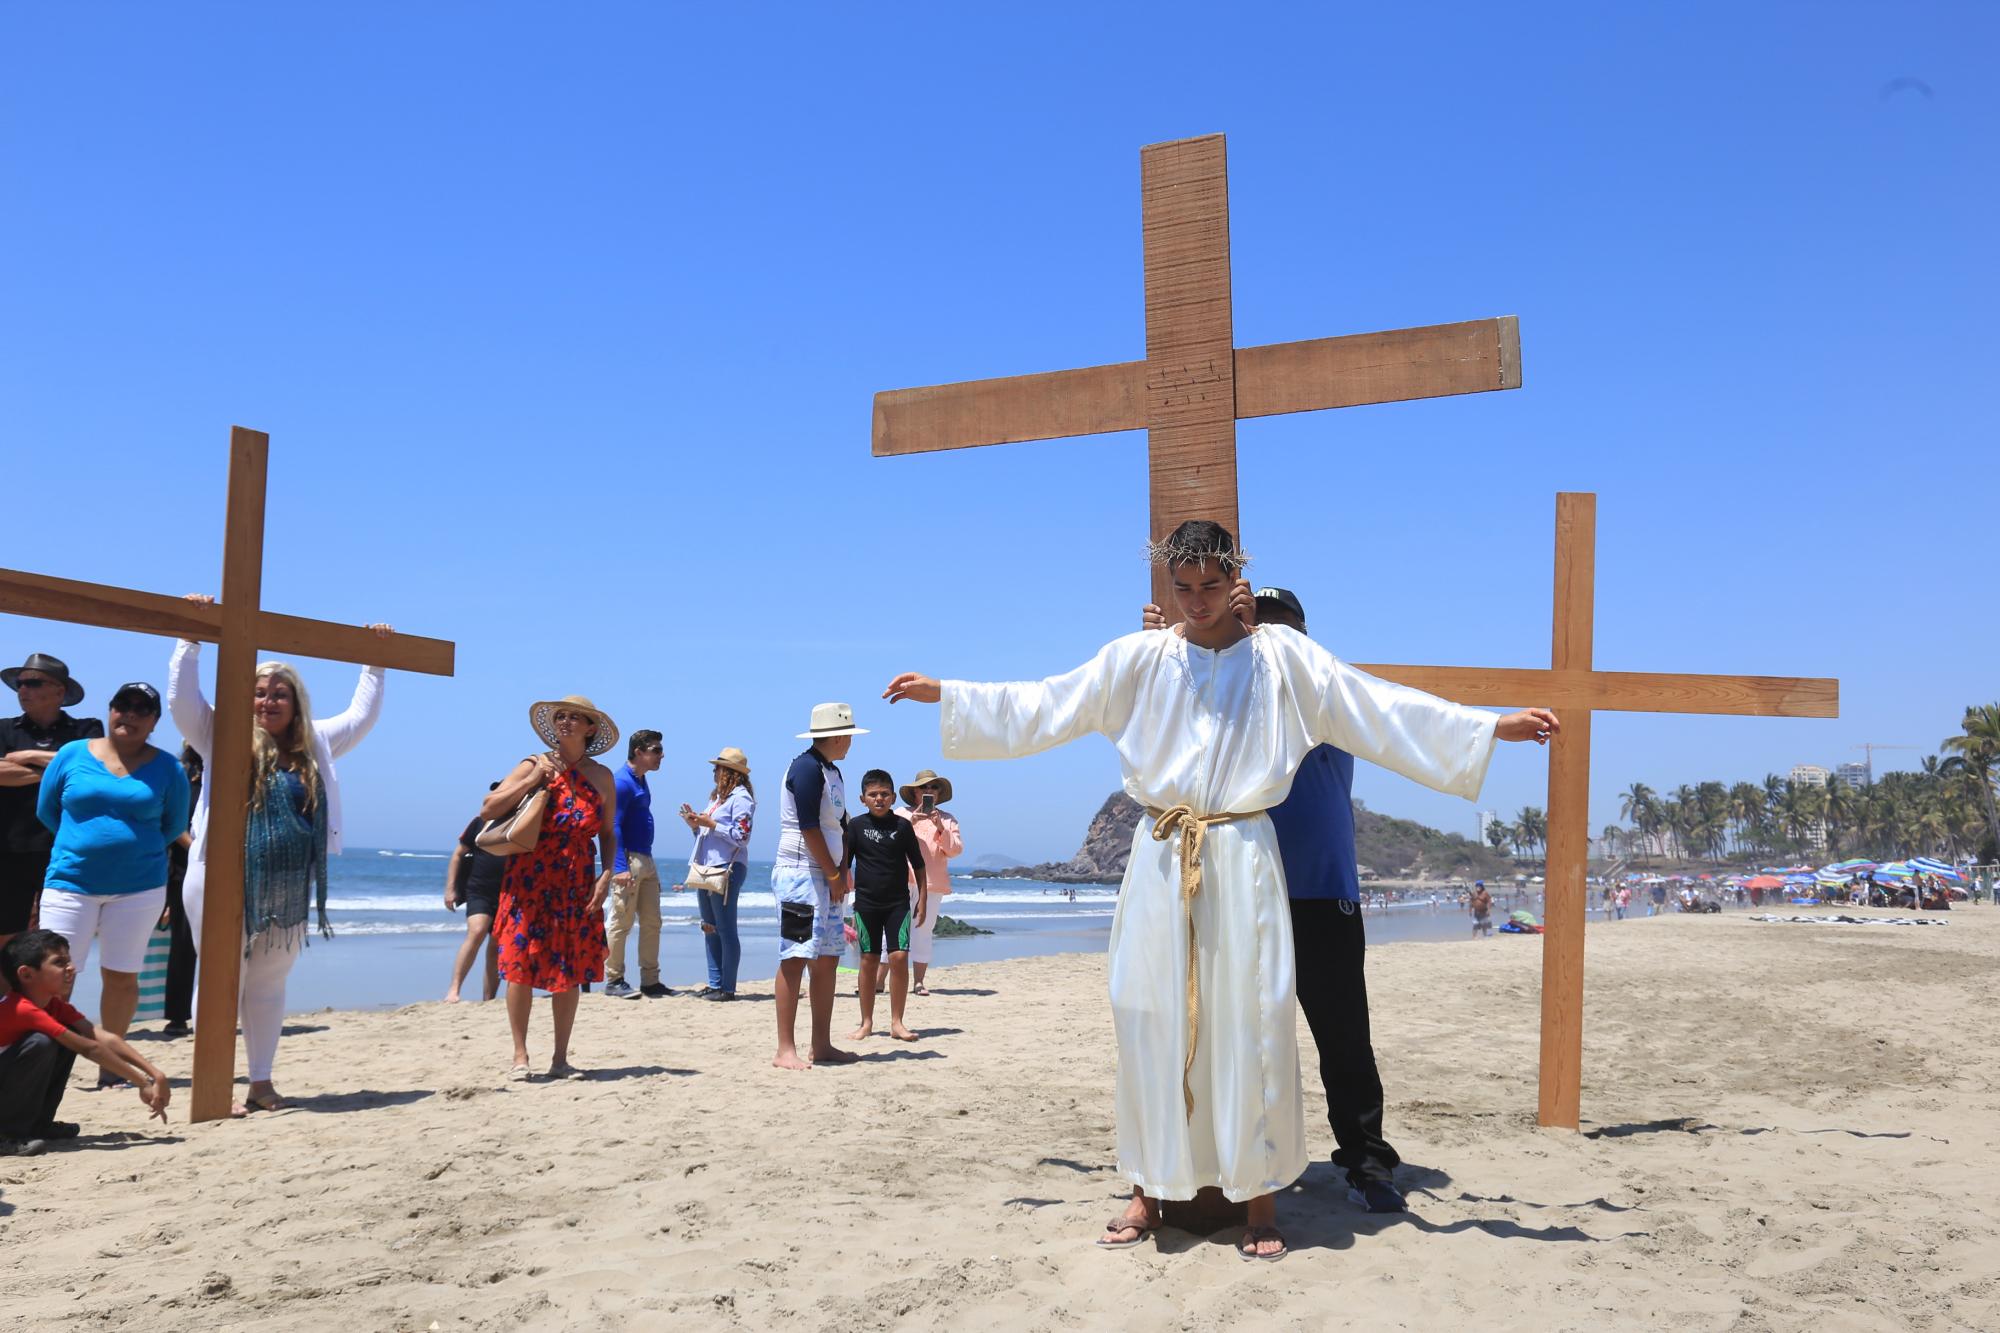 $!Viacrucis viviente que organiza el Templo de San Judas Tadeo se realiza por la playa.